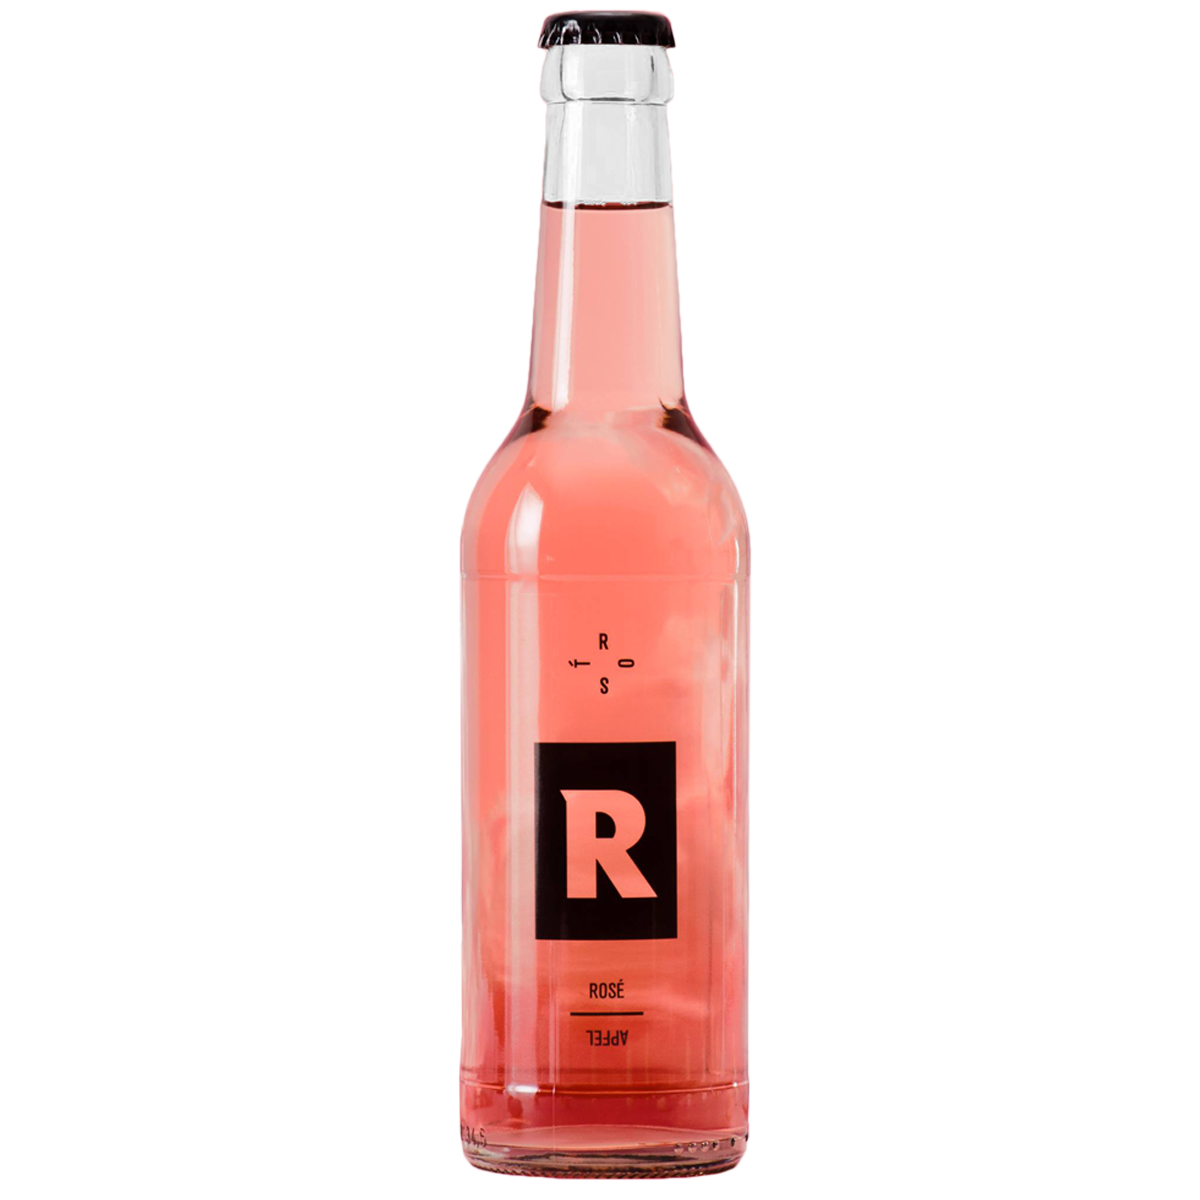 Steirisch-schenken ROST Rose-Wein/Apfel als Werbegeschenk in der 330ml Flasche